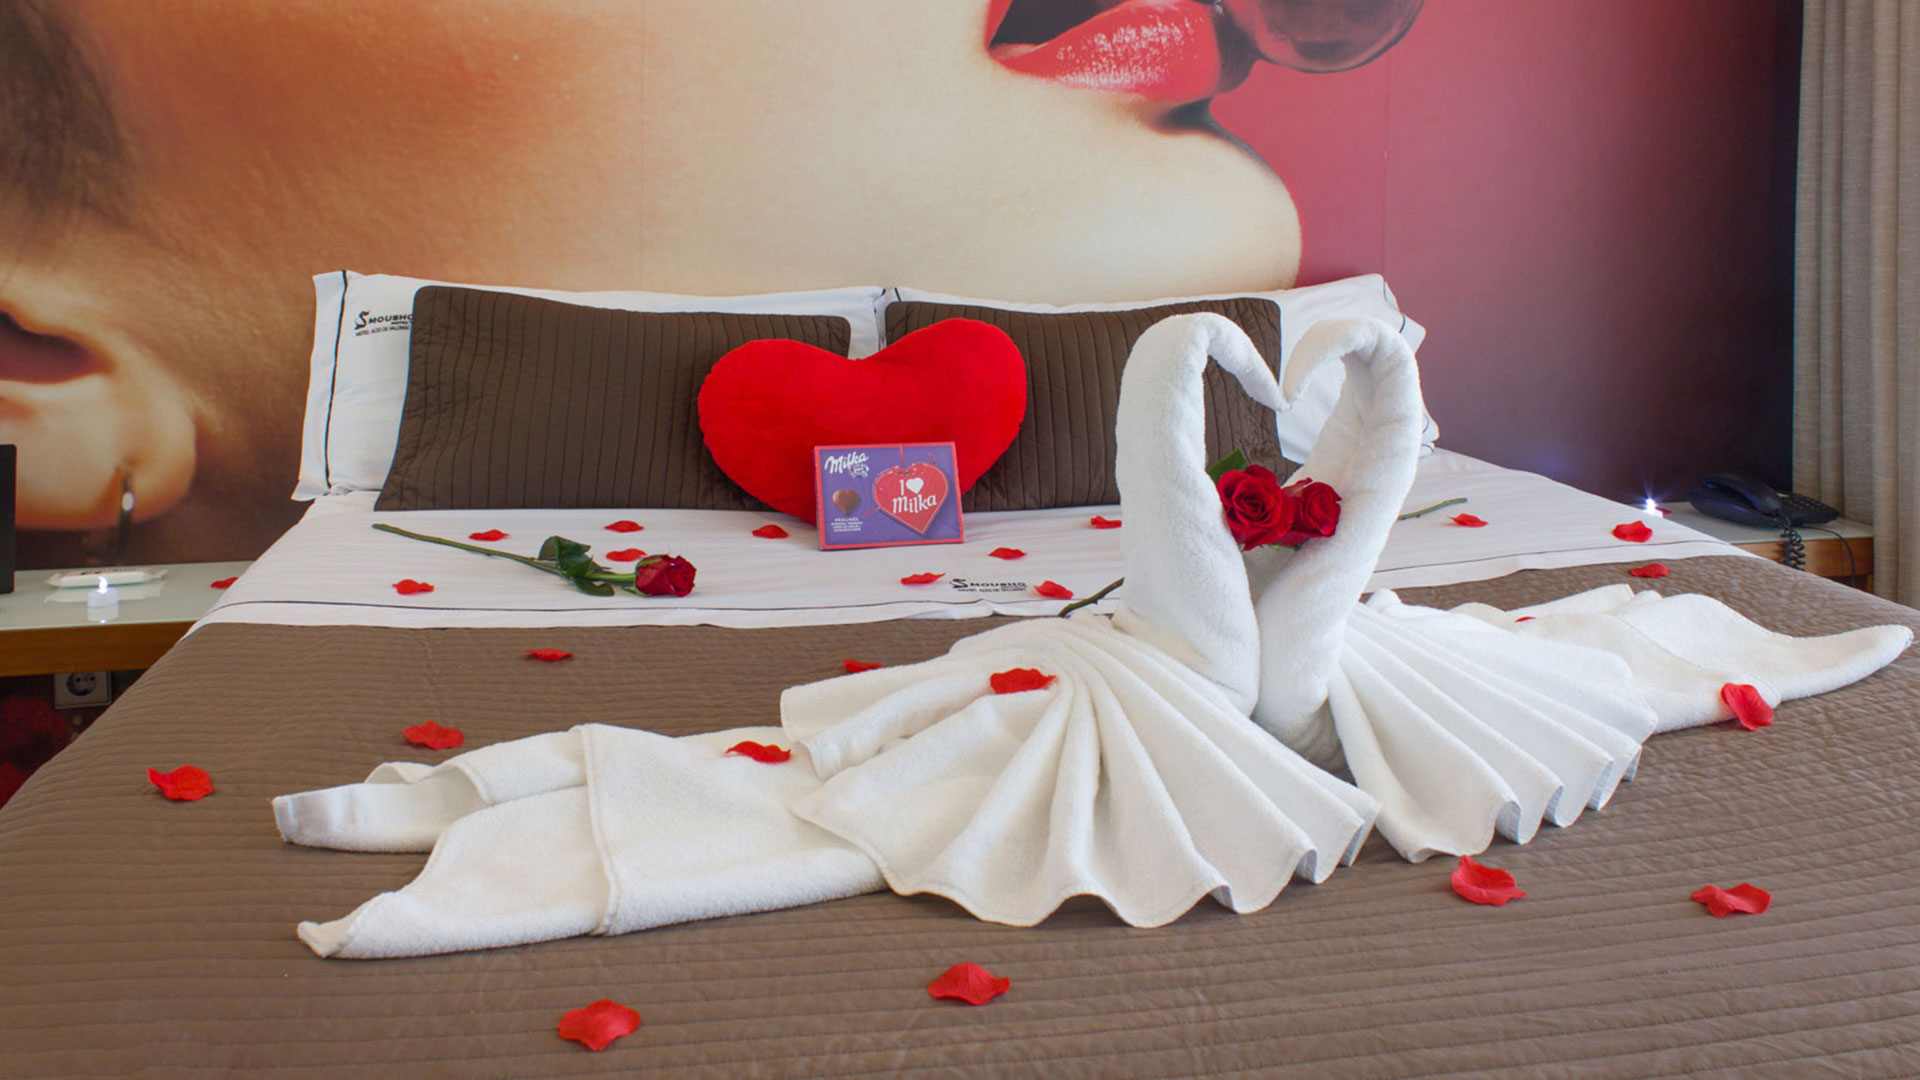 Decoração romântica na suite Eros com cisnes, rosas vermelhas e chocolates, no Motel Alto de Valongo